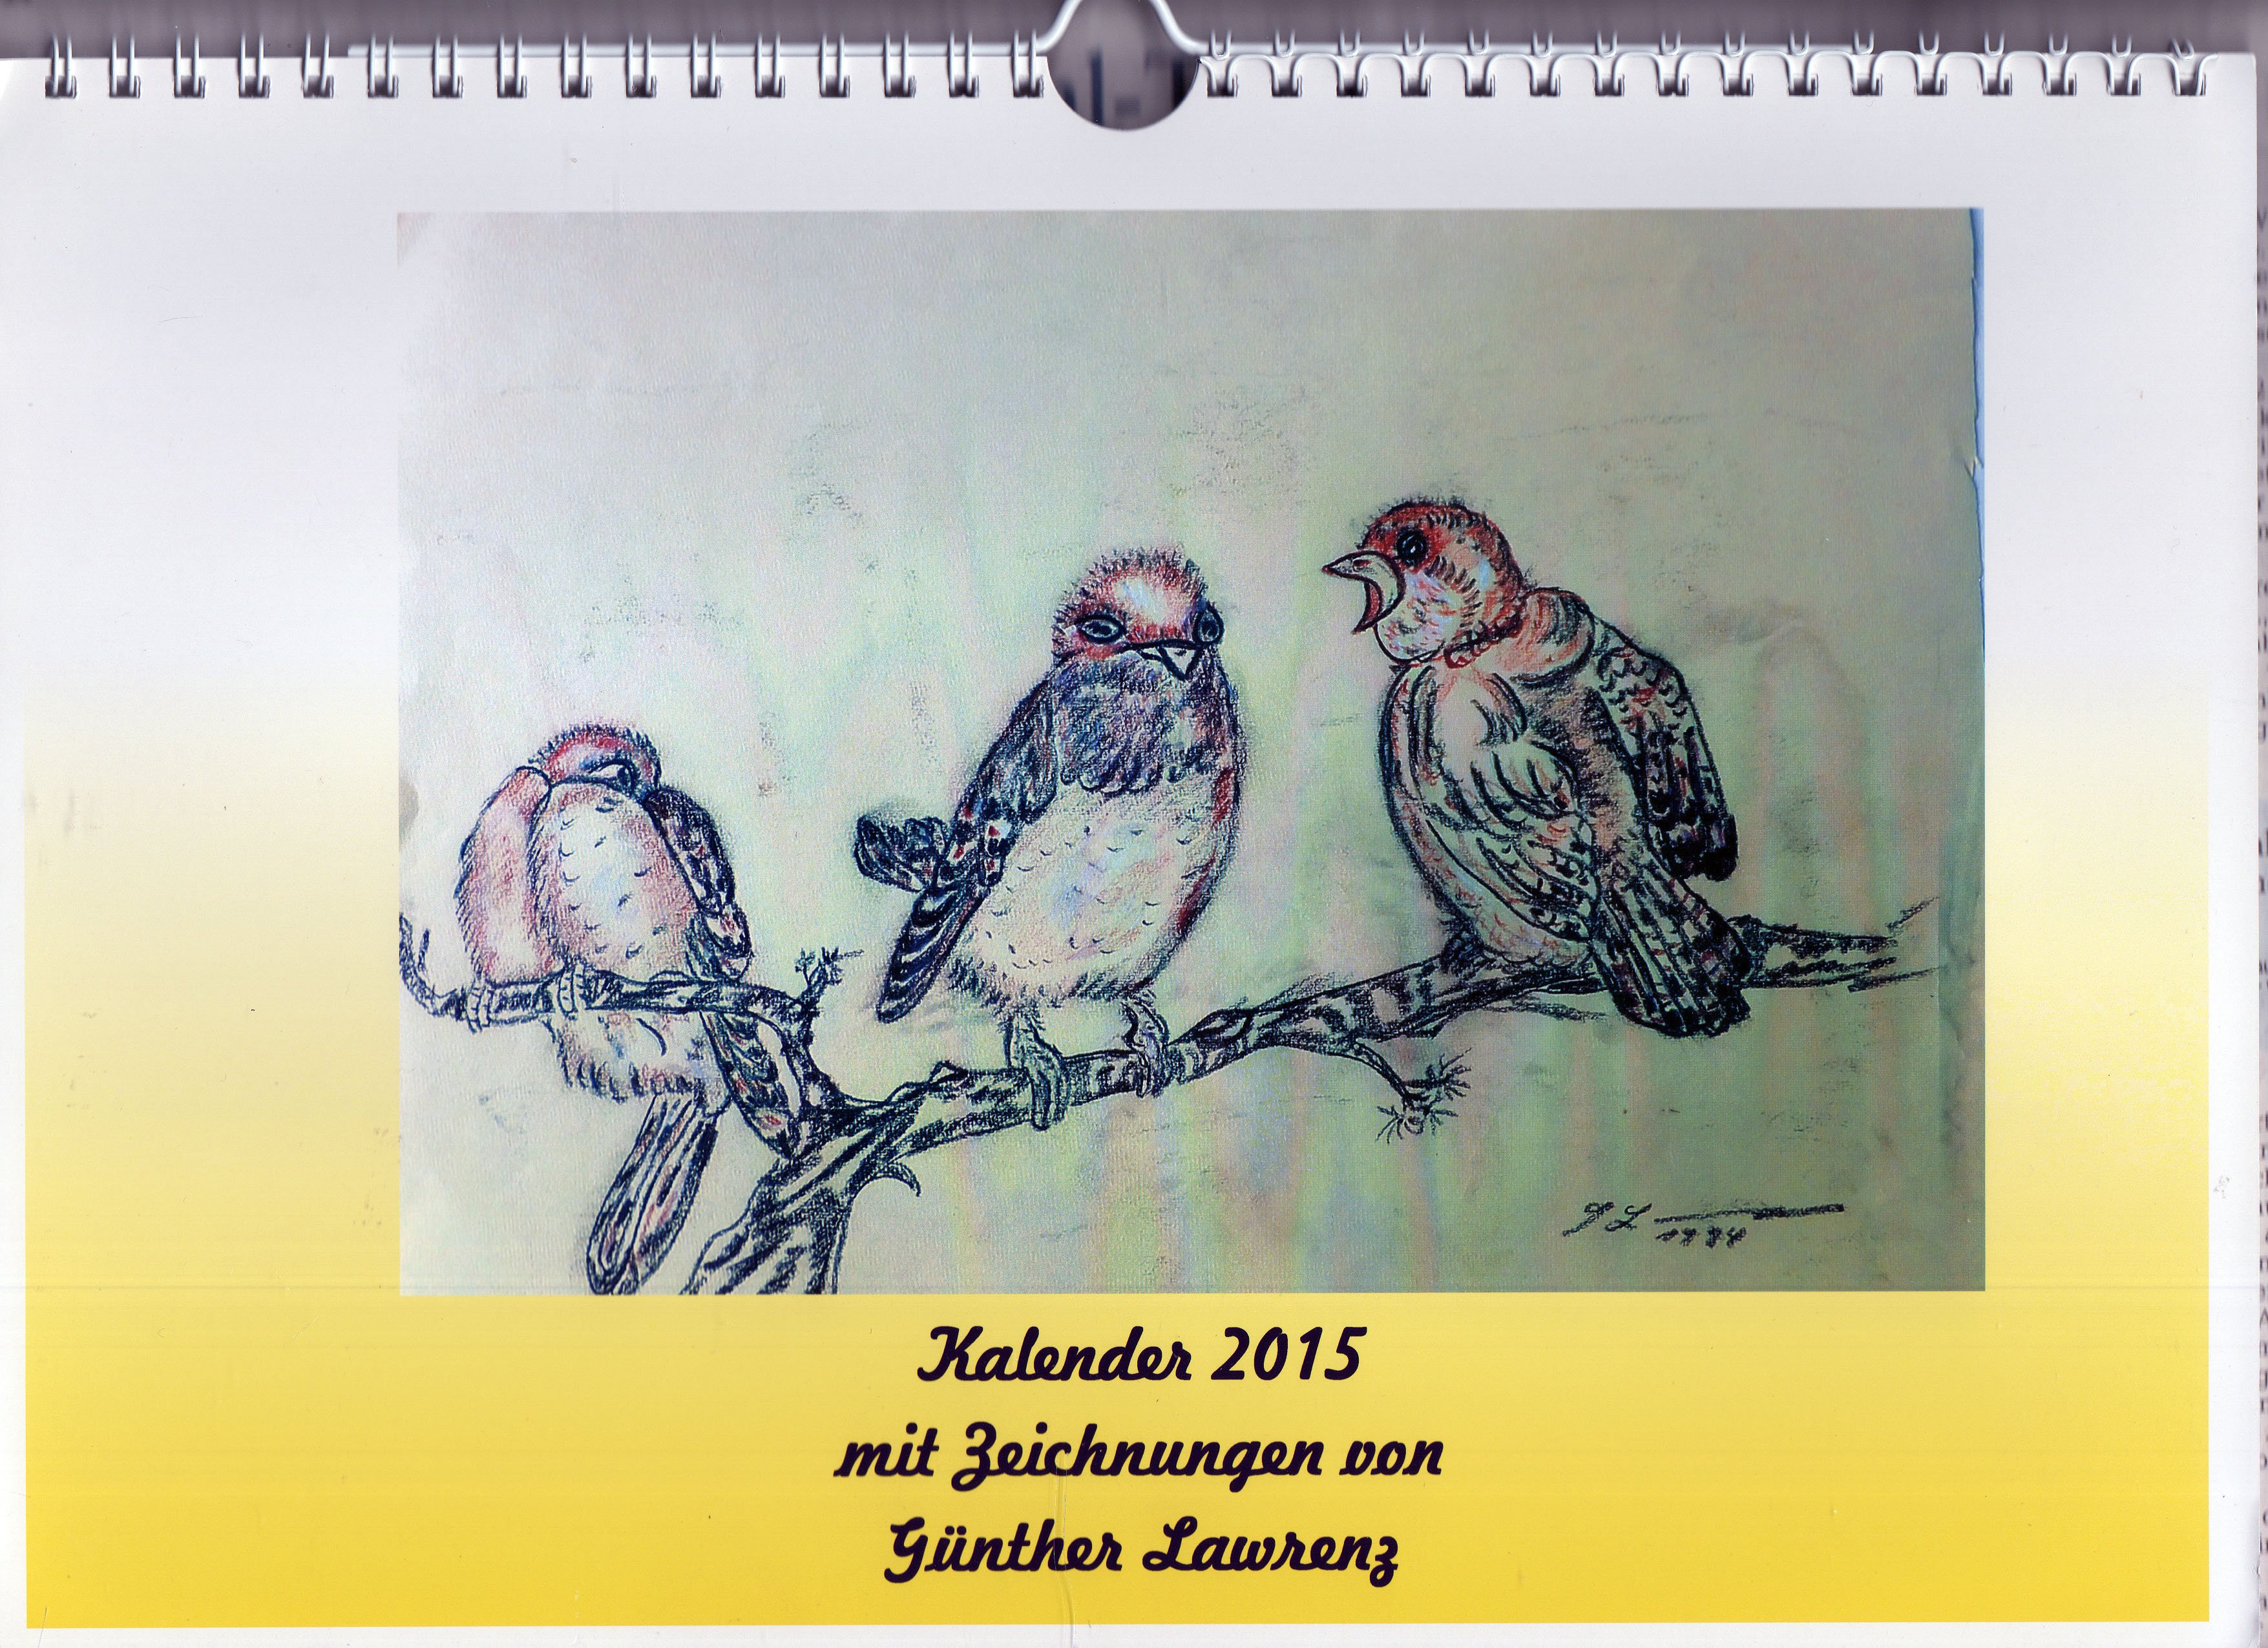 Kalender 2015 mit Zeichnungen von Günther Lawrenz (Günther Lawrenz CC BY-NC-SA)